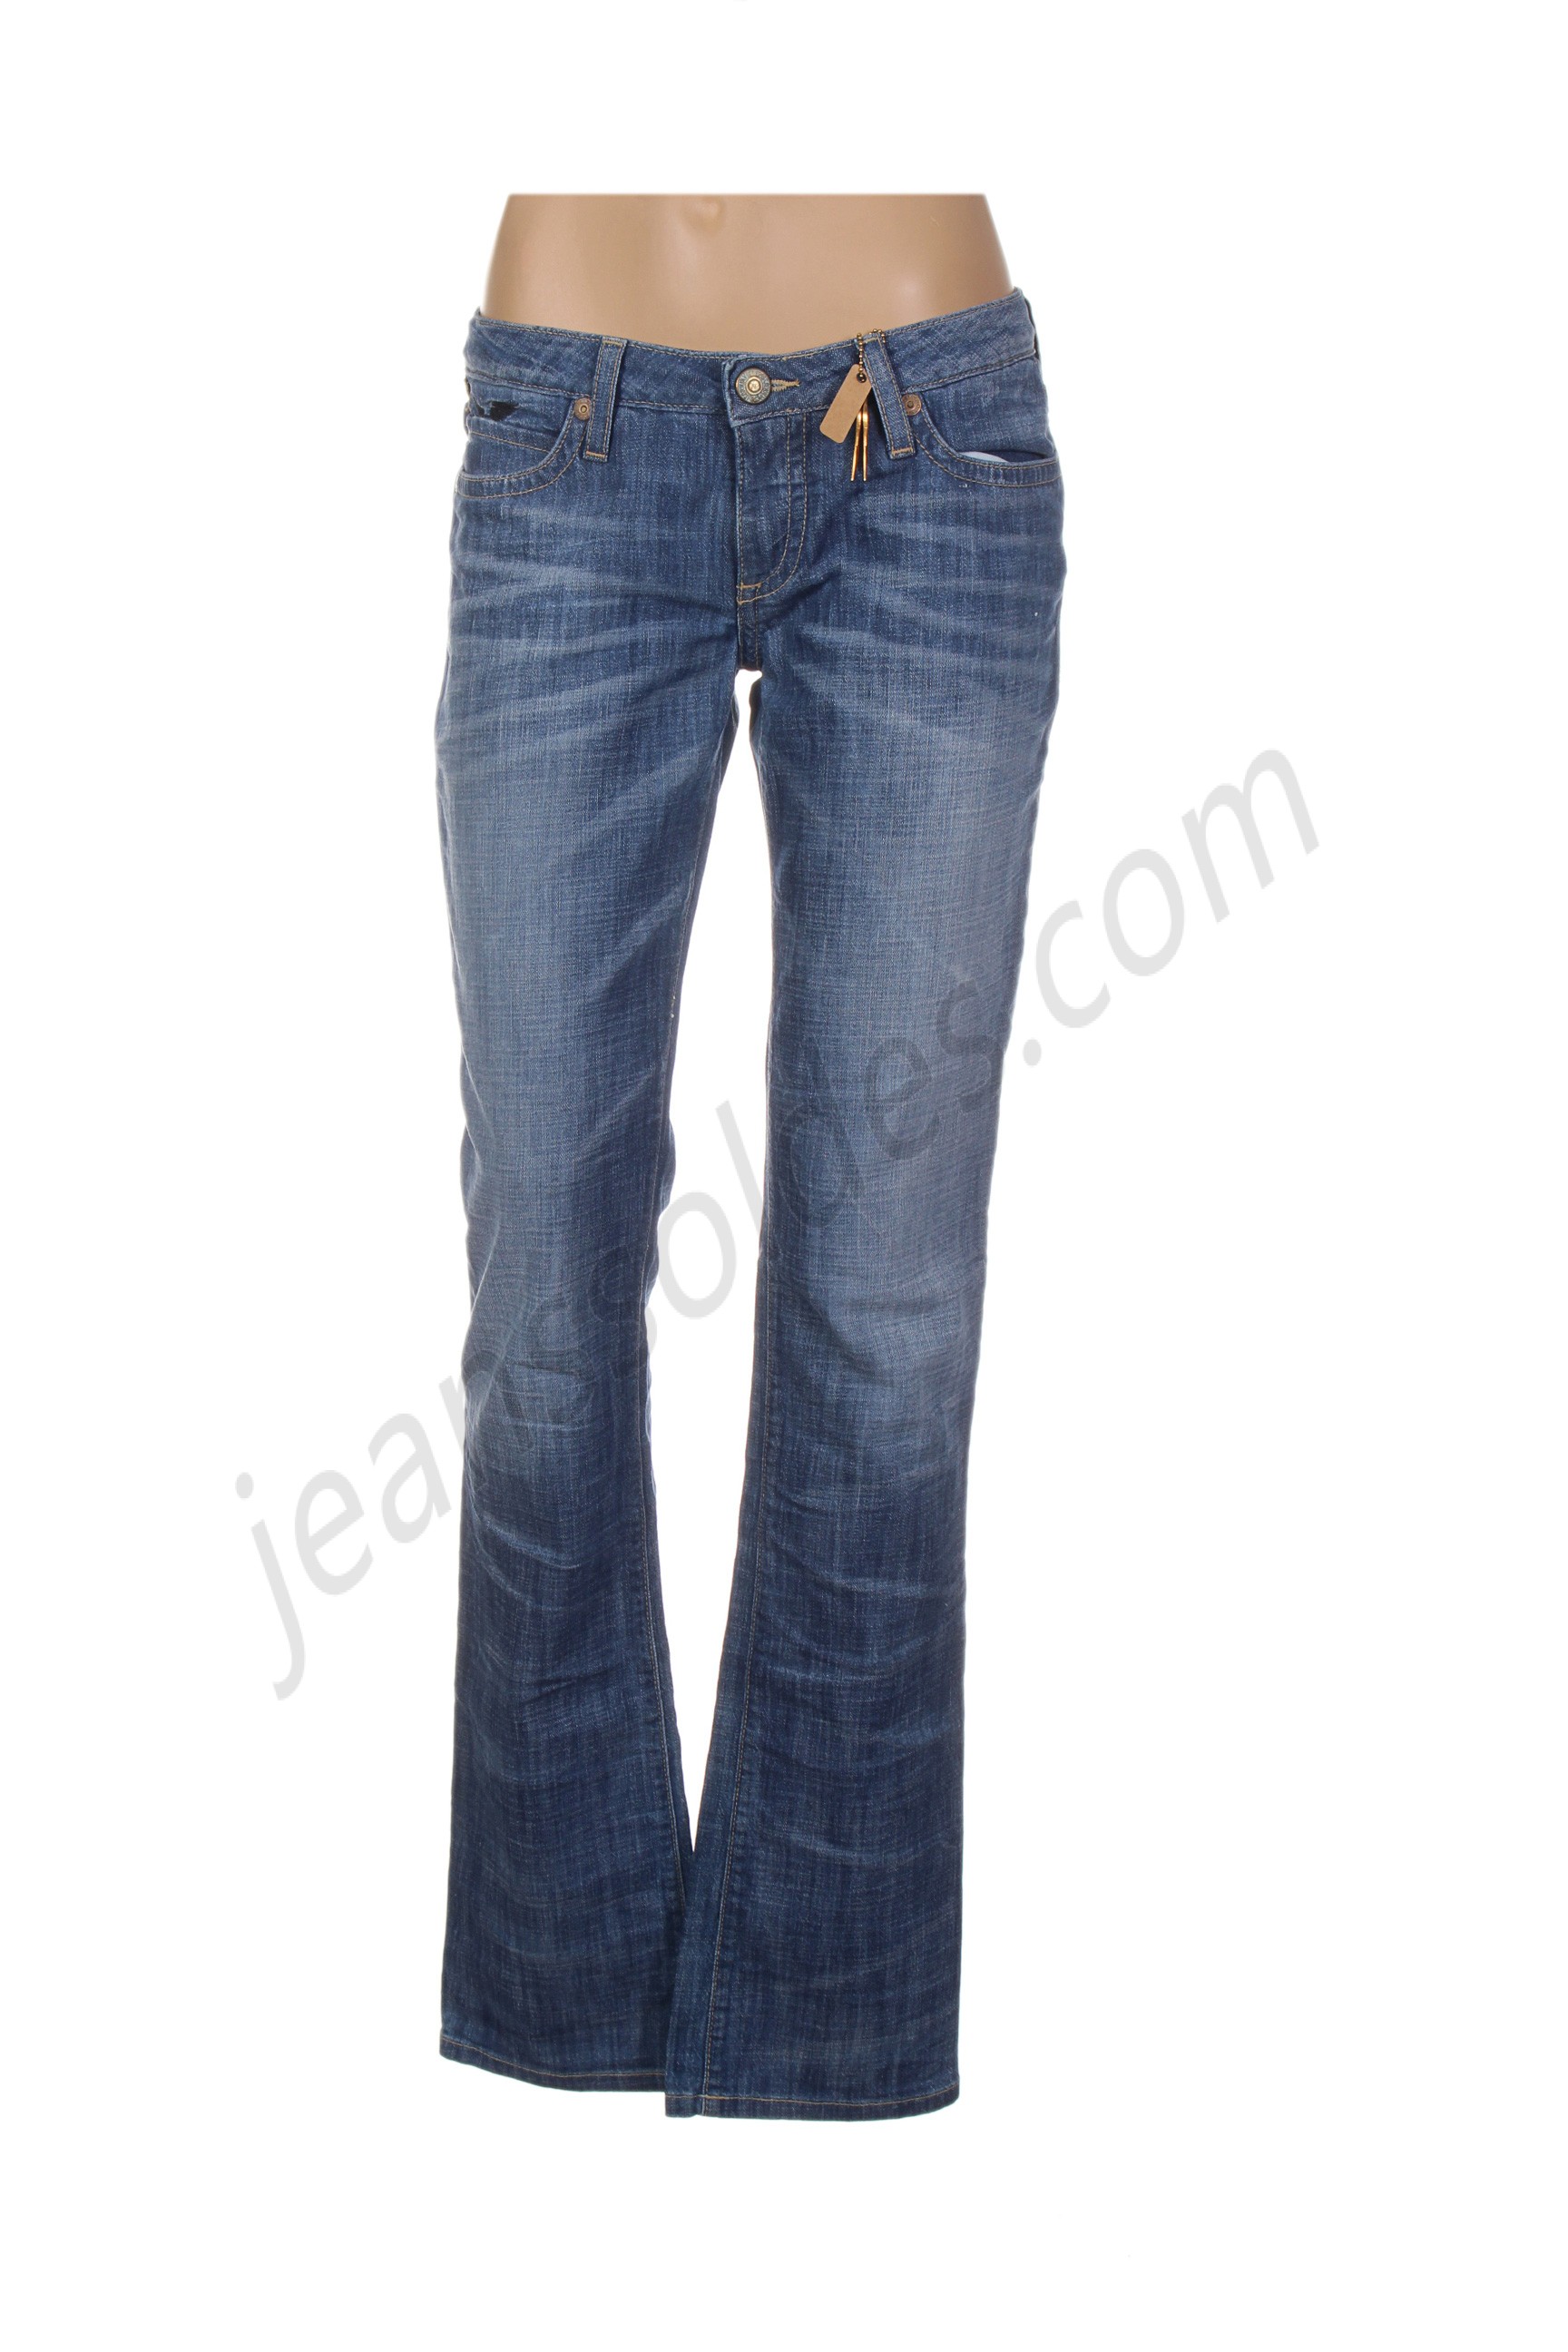 robin's jean-Jeans coupe droite prix d’amis - robin's jean-Jeans coupe droite prix d’amis